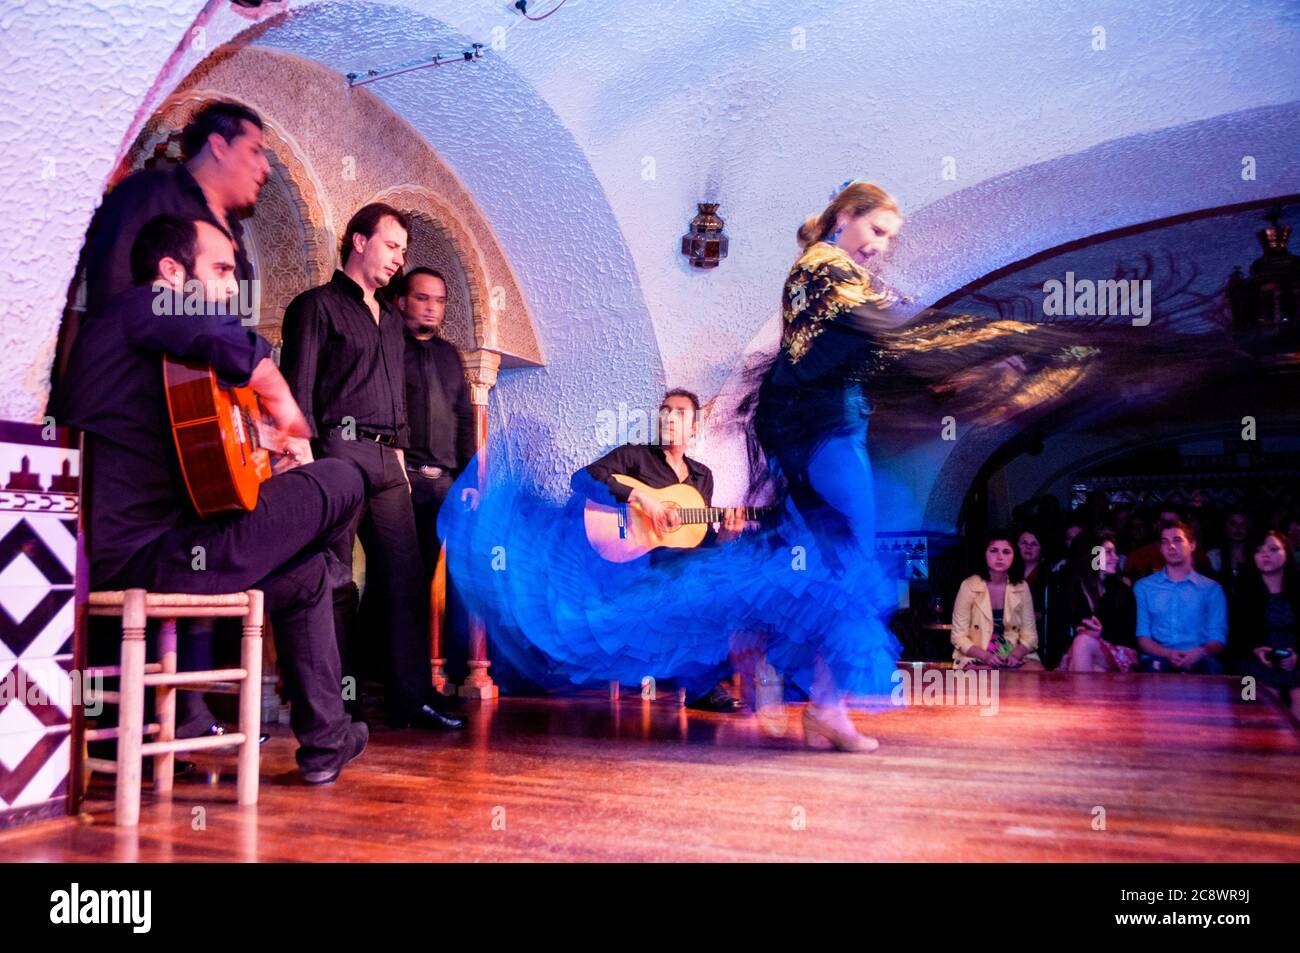 L'arte dello spettacolo spagnolo di flamenco con abiti sgargianti e pedine percussive che racconta una storia attraverso la danza e la musica, Barcellona. Foto Stock